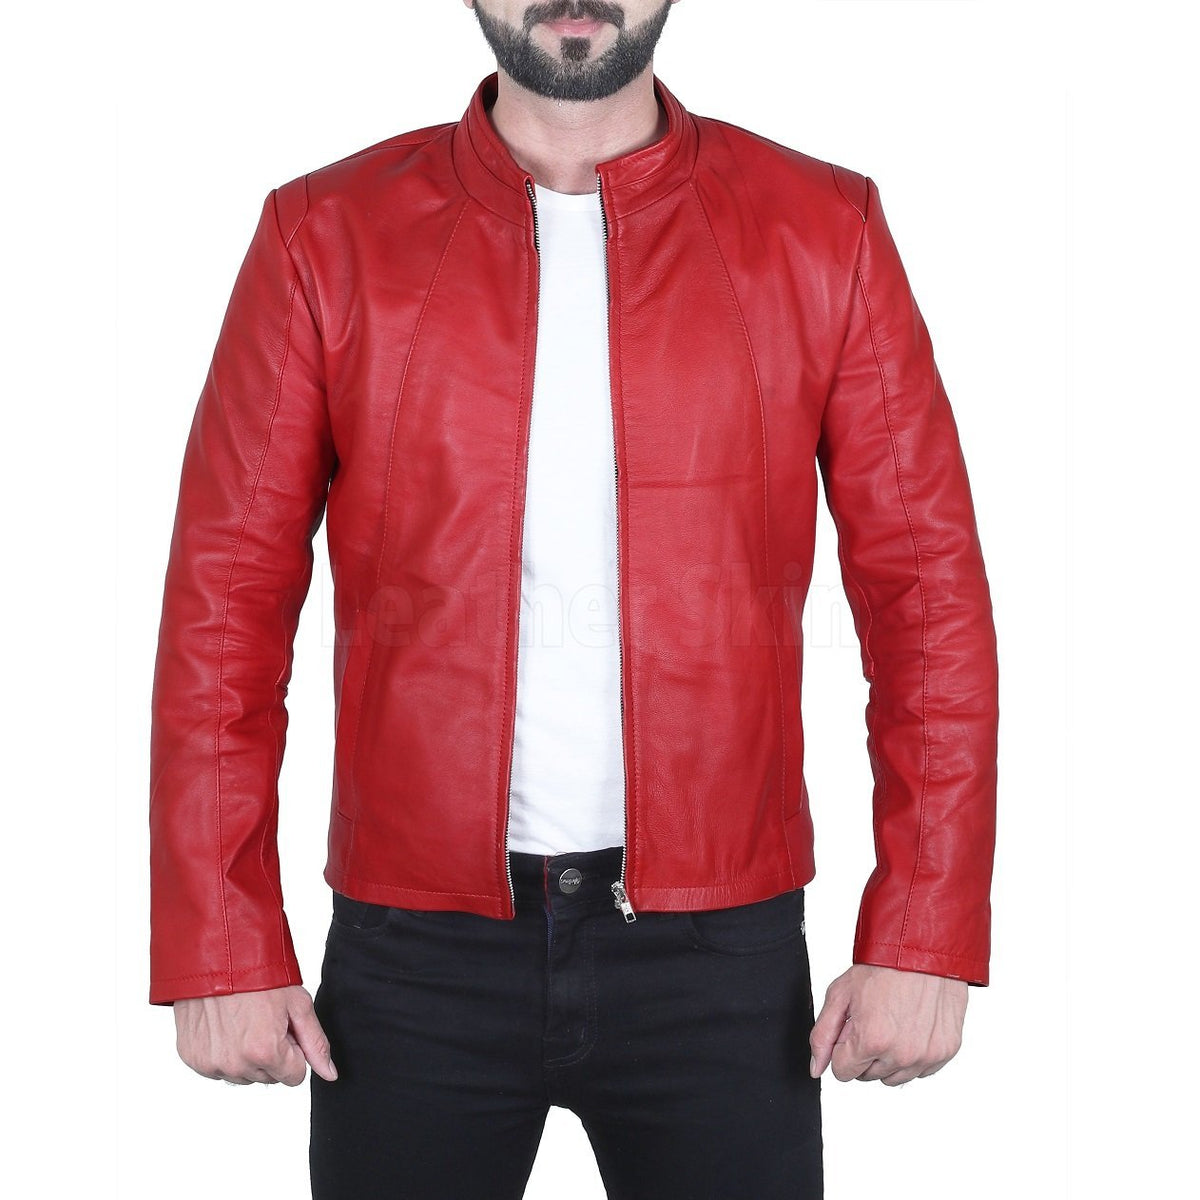 Dashing Red Biker Leather Jacket